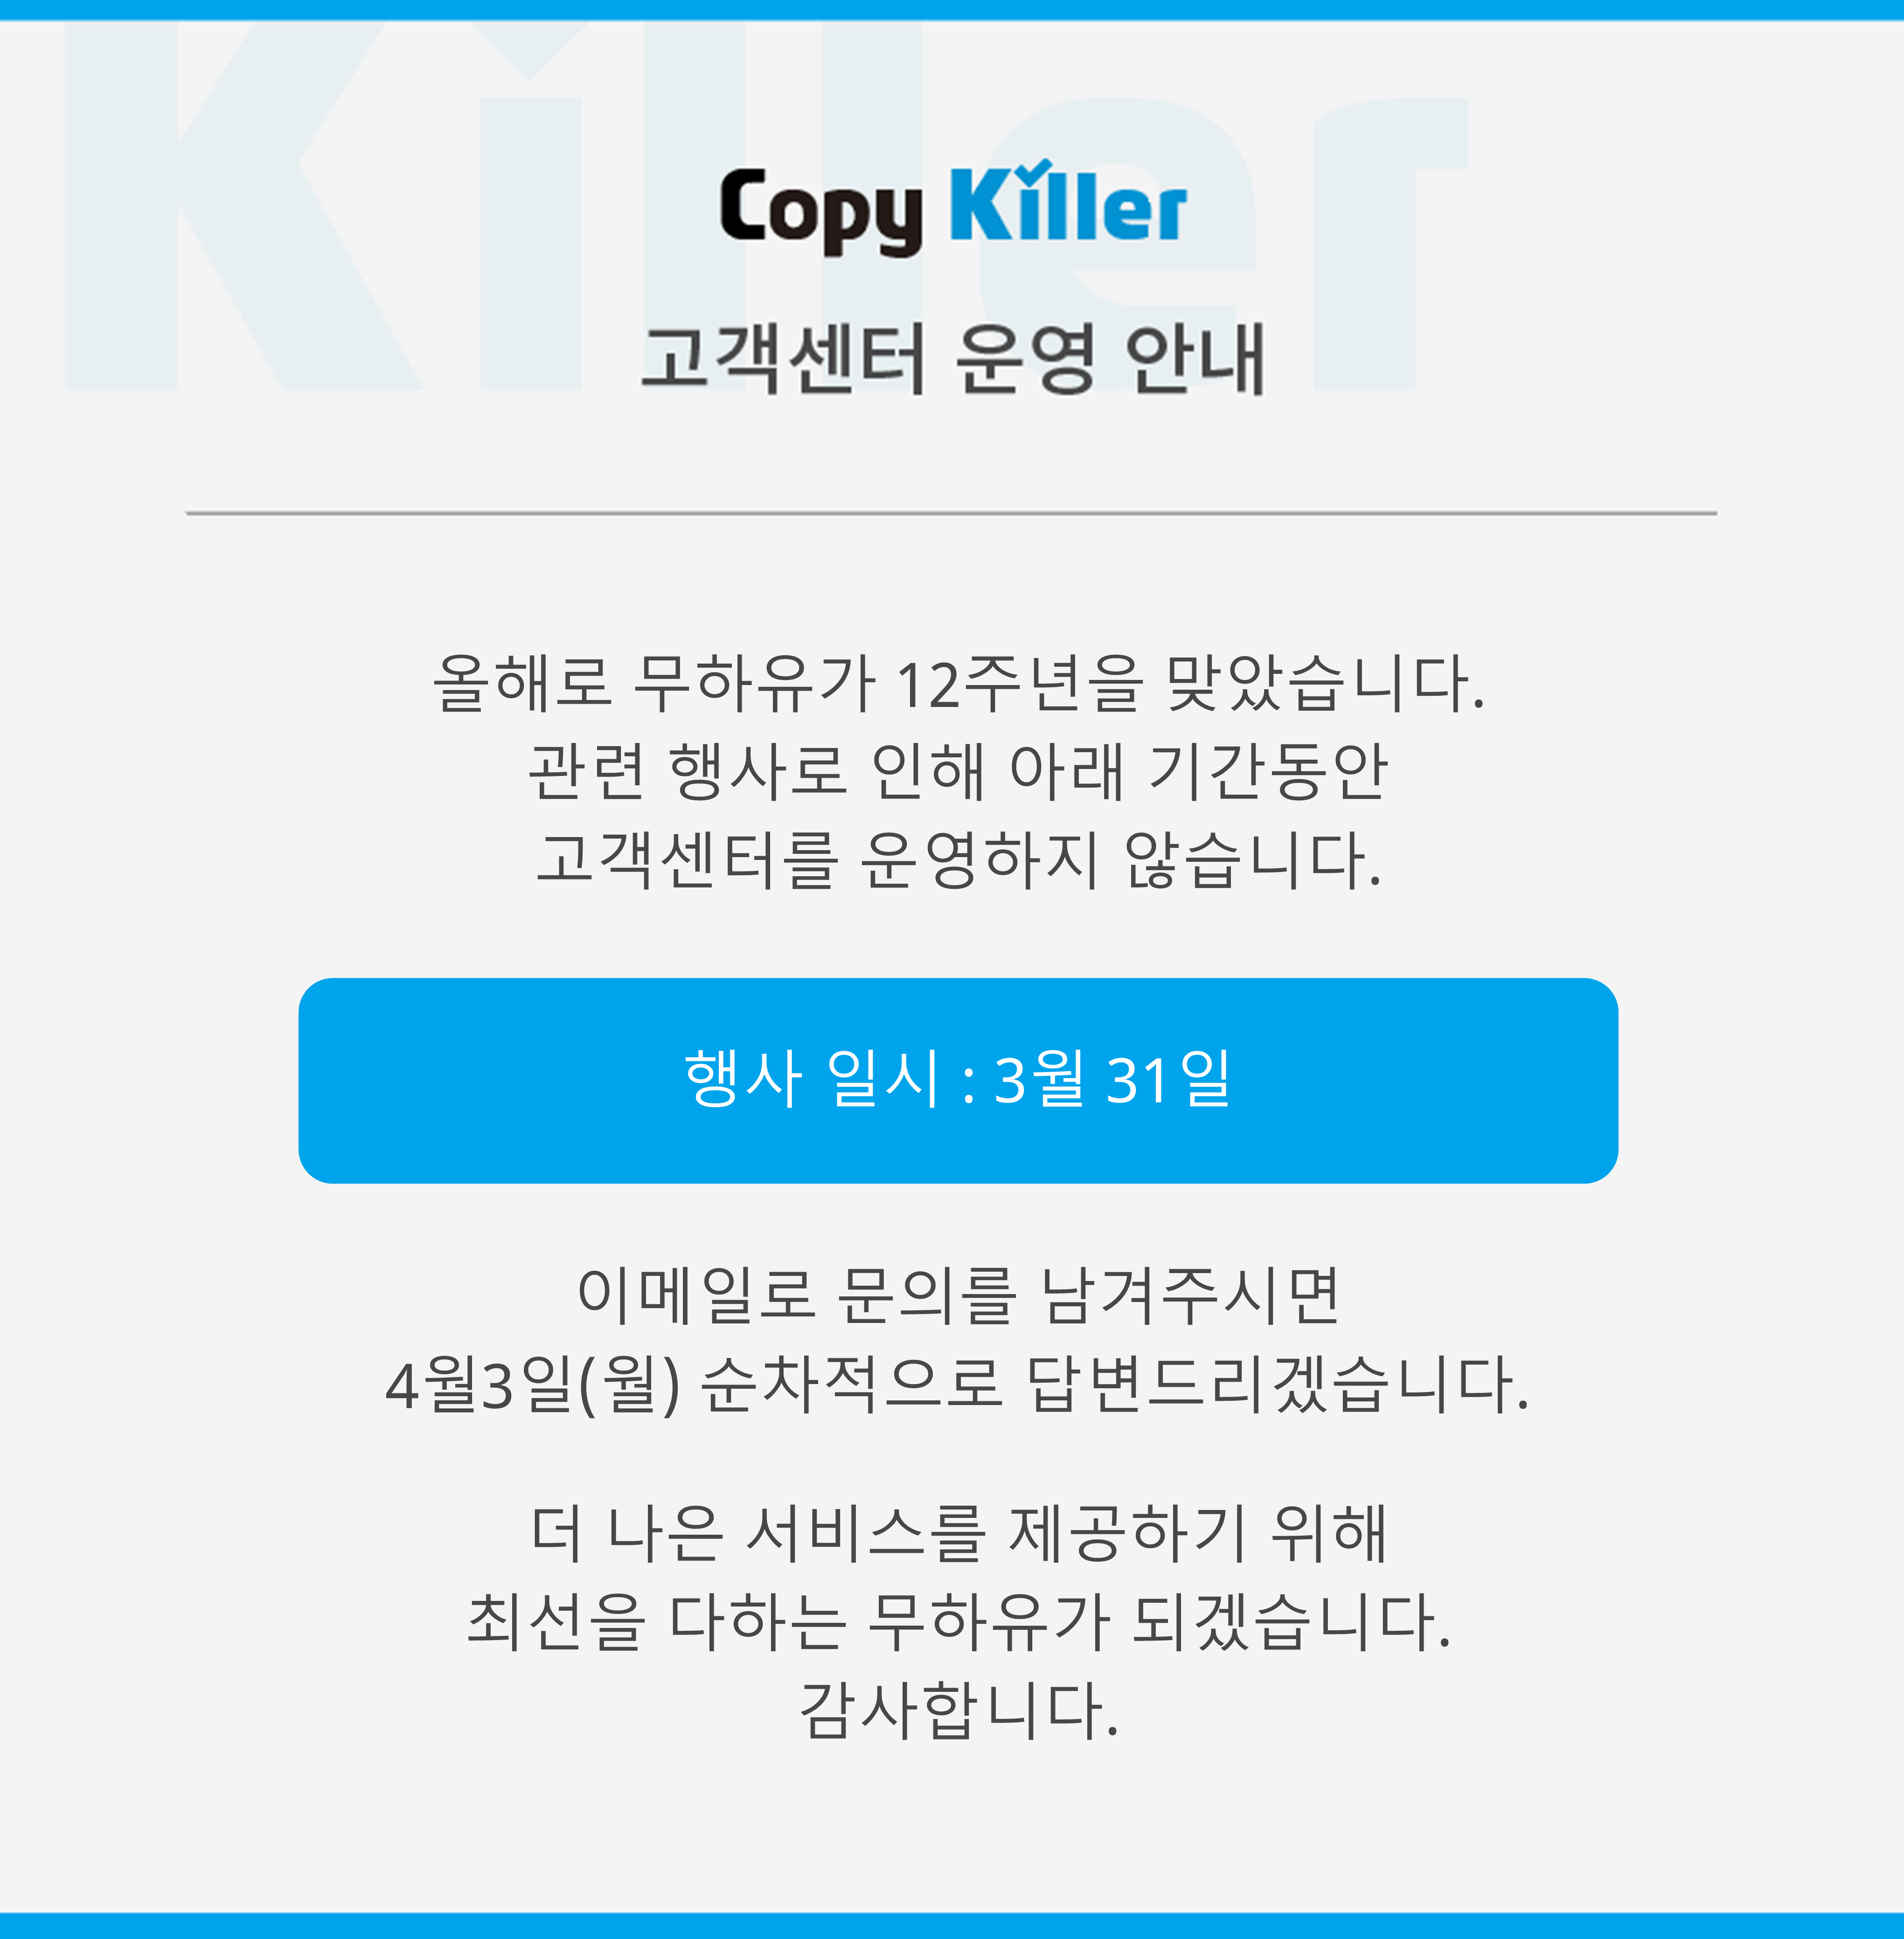 대전대학교 전용 카피킬러캠퍼스